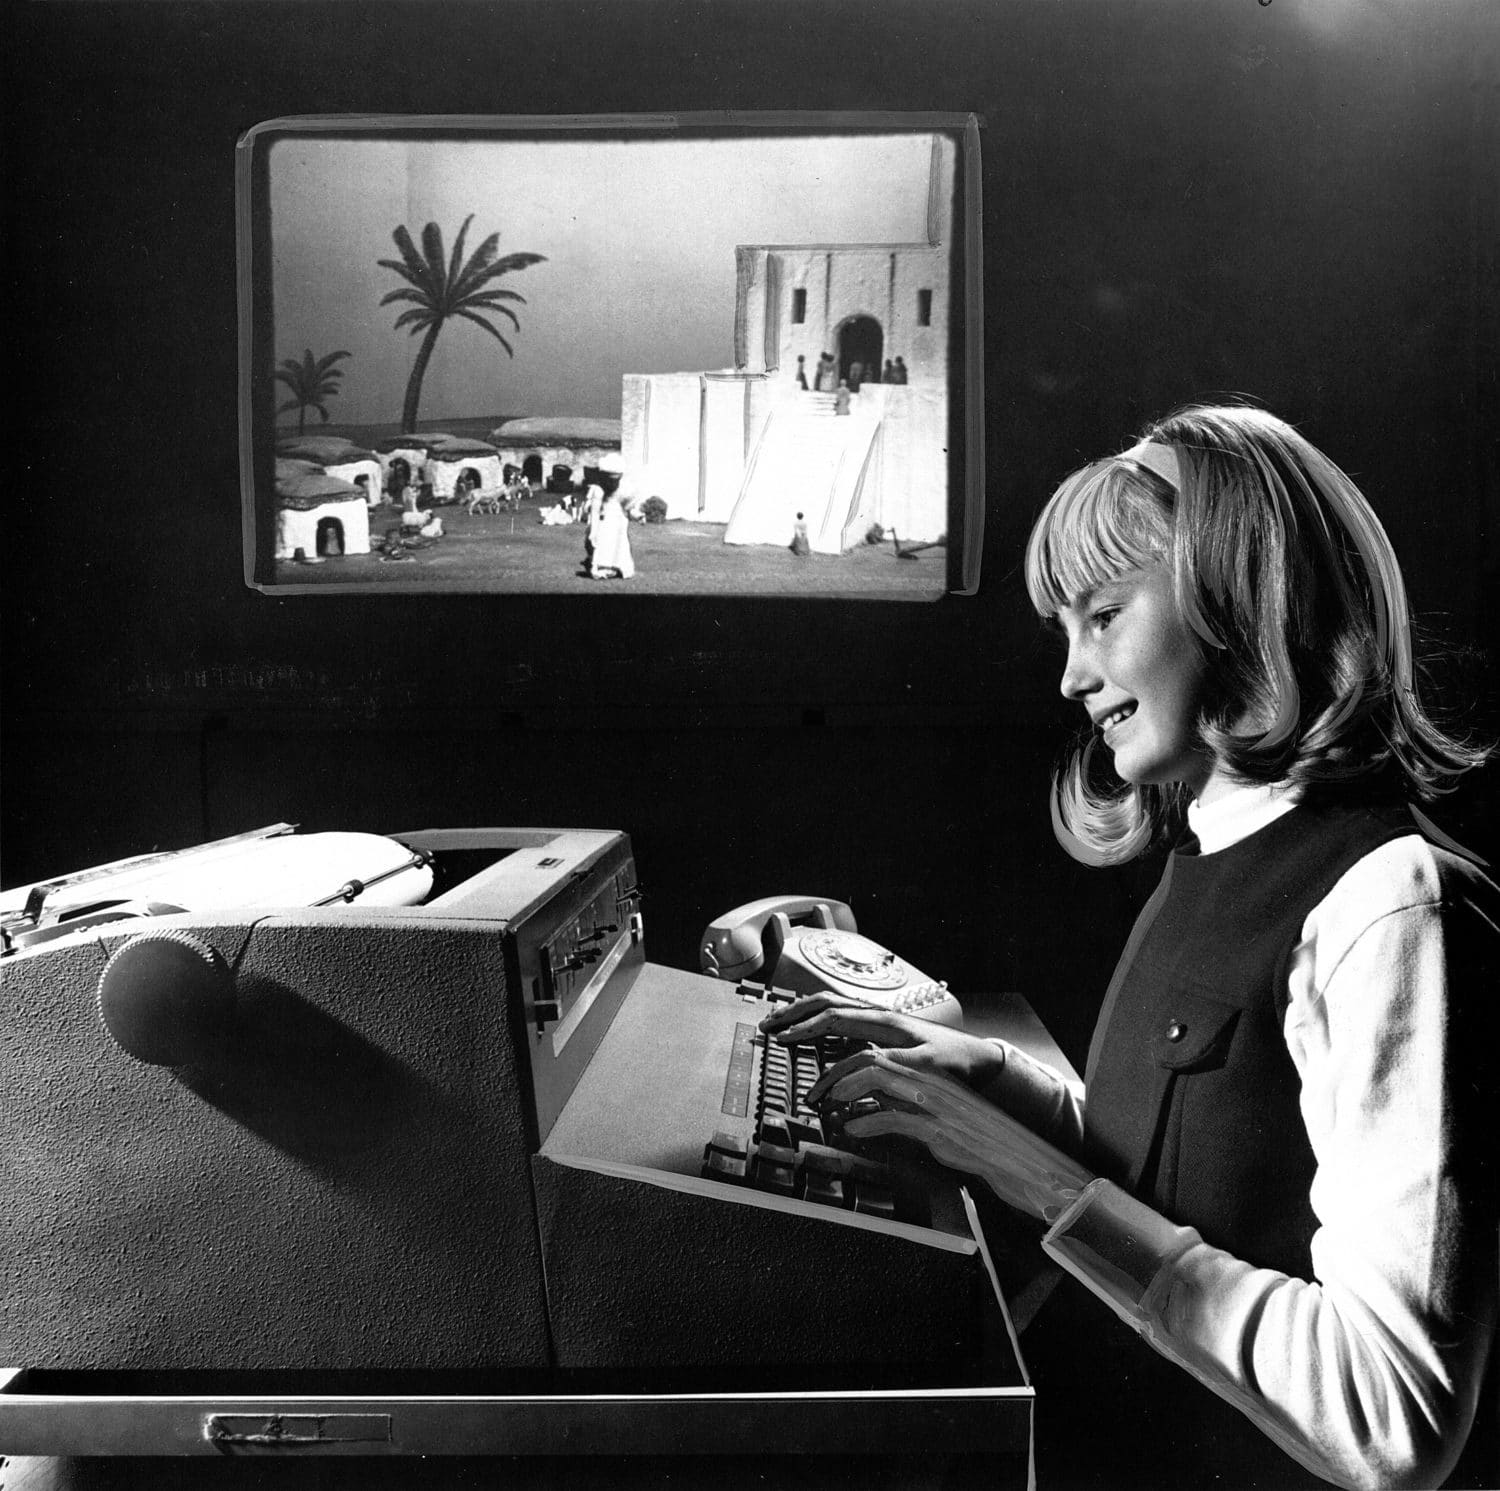 (Na této fotografii z roku 1968 je zachycena školačka hrající Sumerskou hru. Akci ilustruje snímek v pozadí. (Zdroj: Wikipedia))